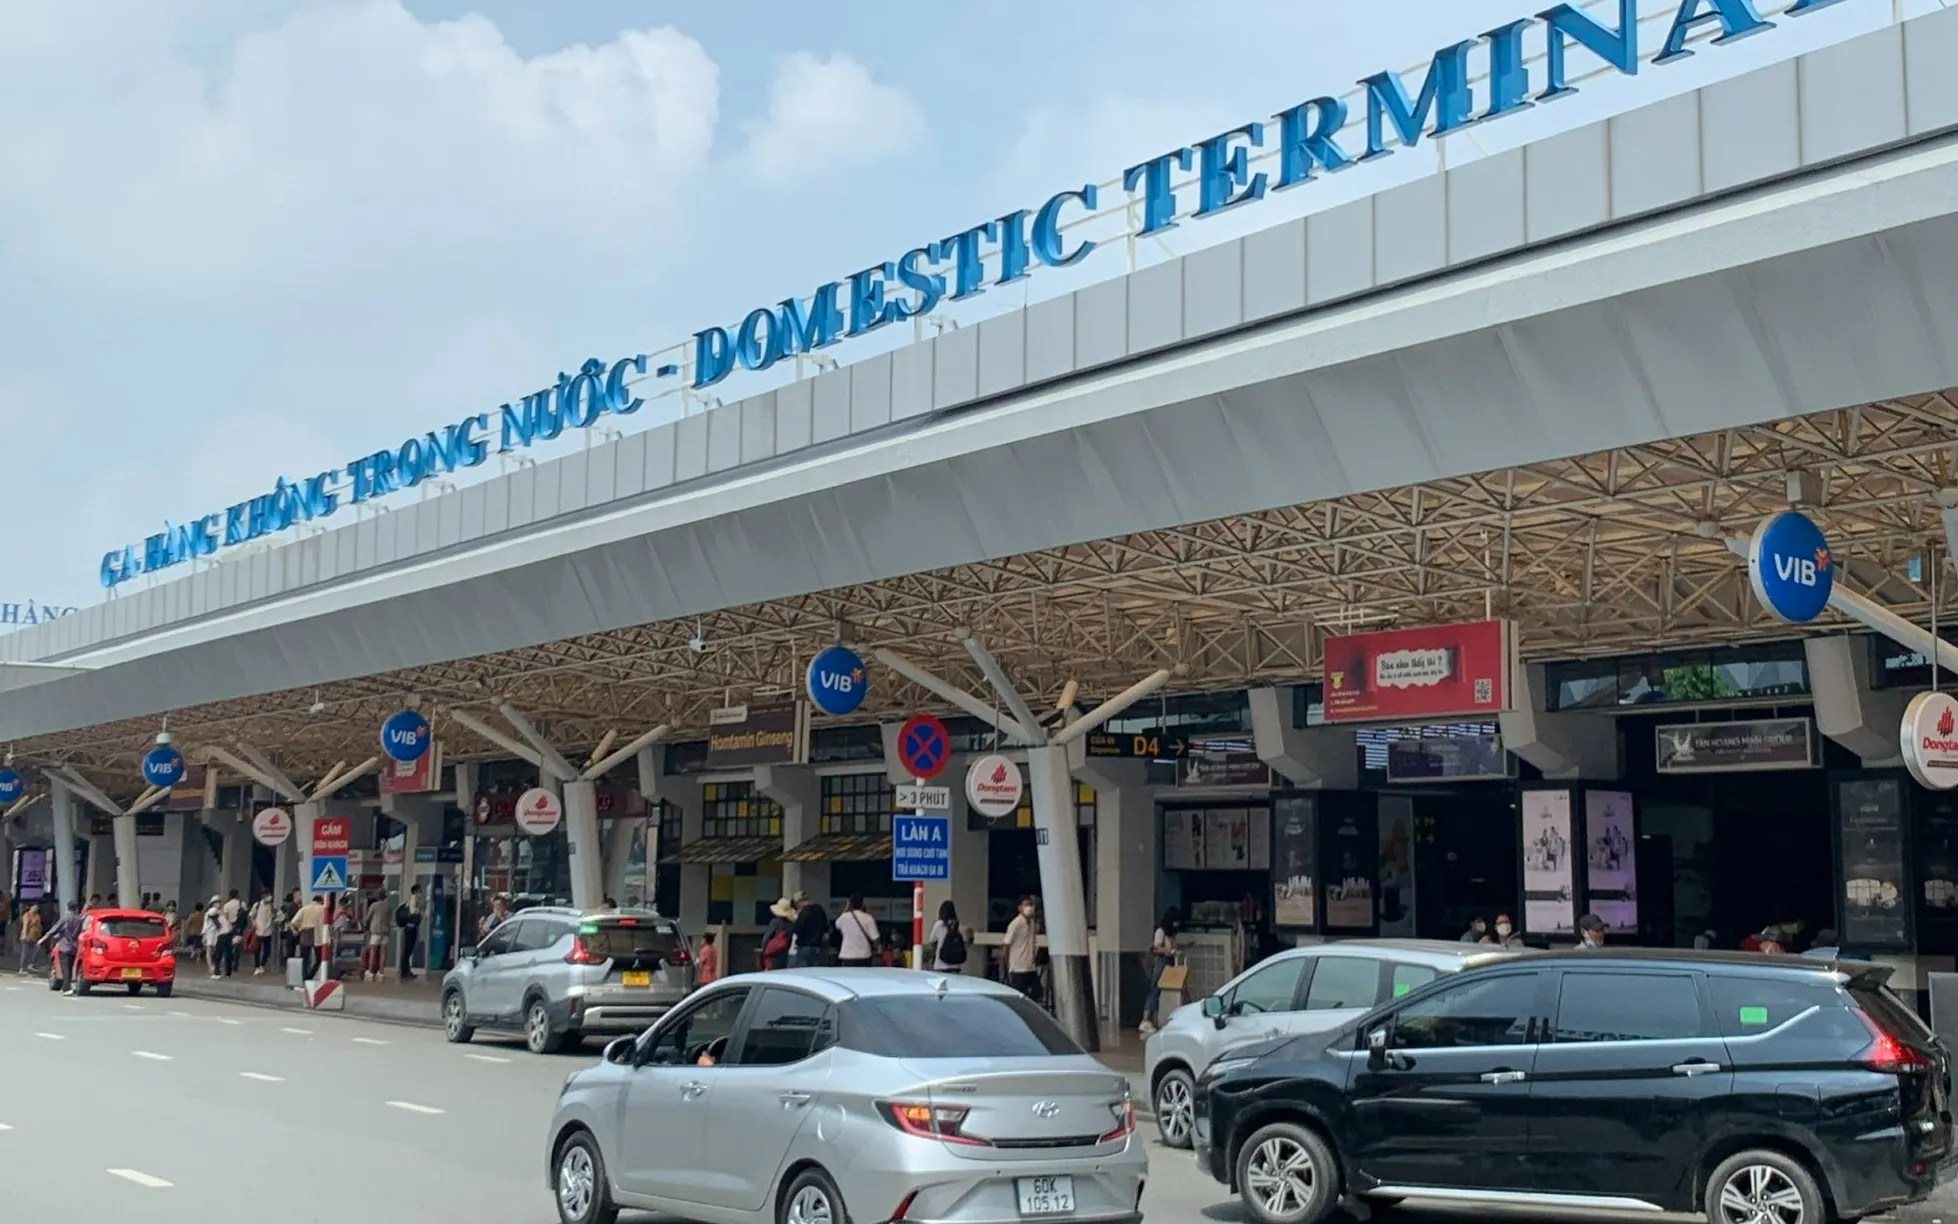 Sân bay Tân Sơn Nhất, TpHCM